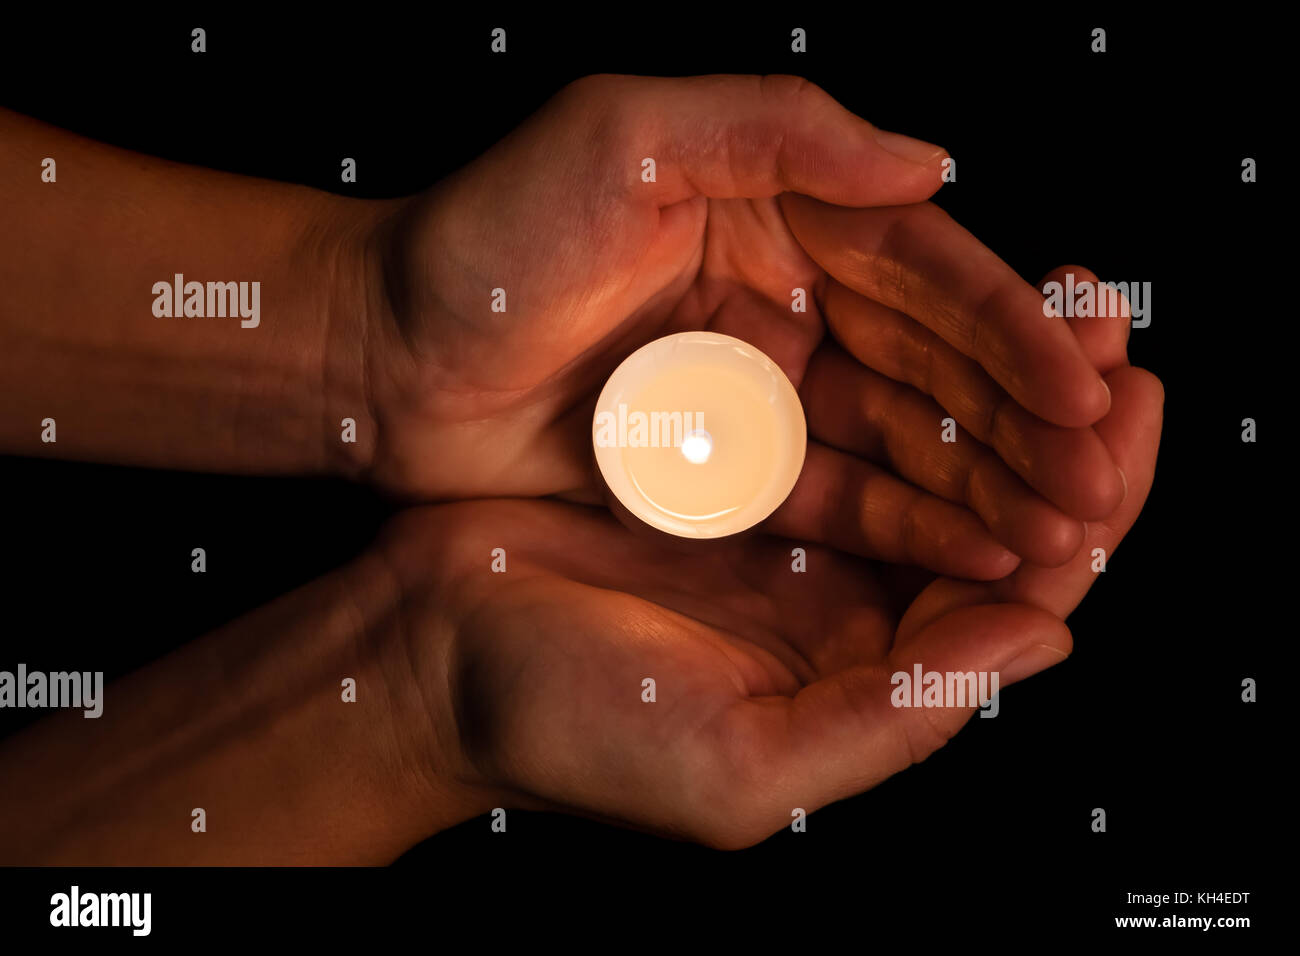 Hände halten und Schützen von Leuchten oder brennende Kerze Kerzenlicht auf Dunkelheit. schwarzer Hintergrund. Konzept für Gebet, Beten, hoffen, Vigil, Night Watch Stockfoto